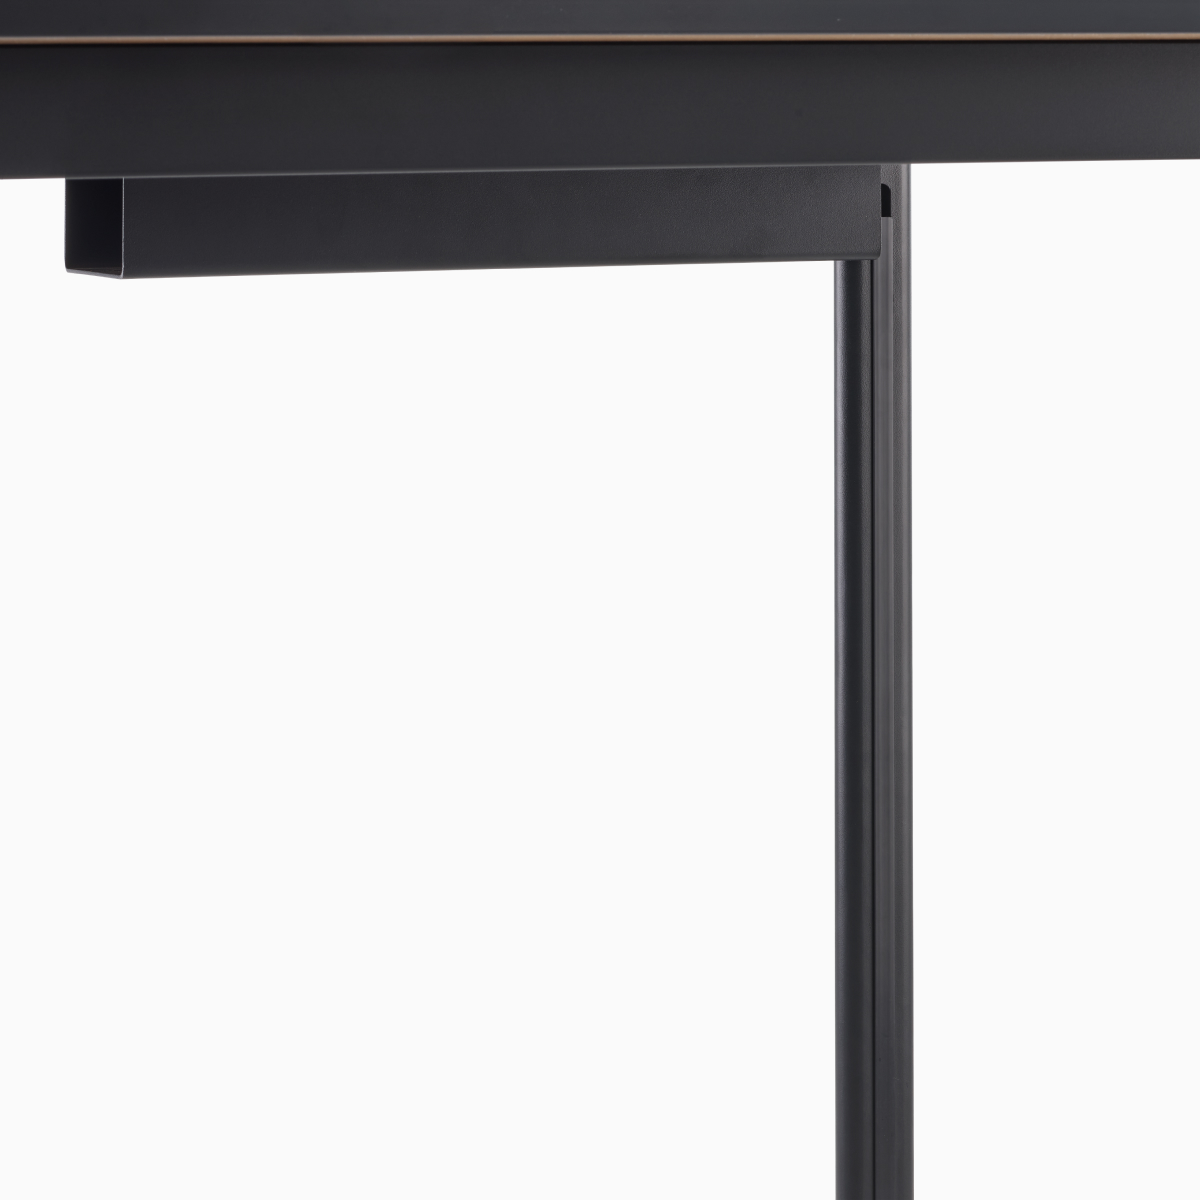 Detail view of steel legs in black on a Mode desk.